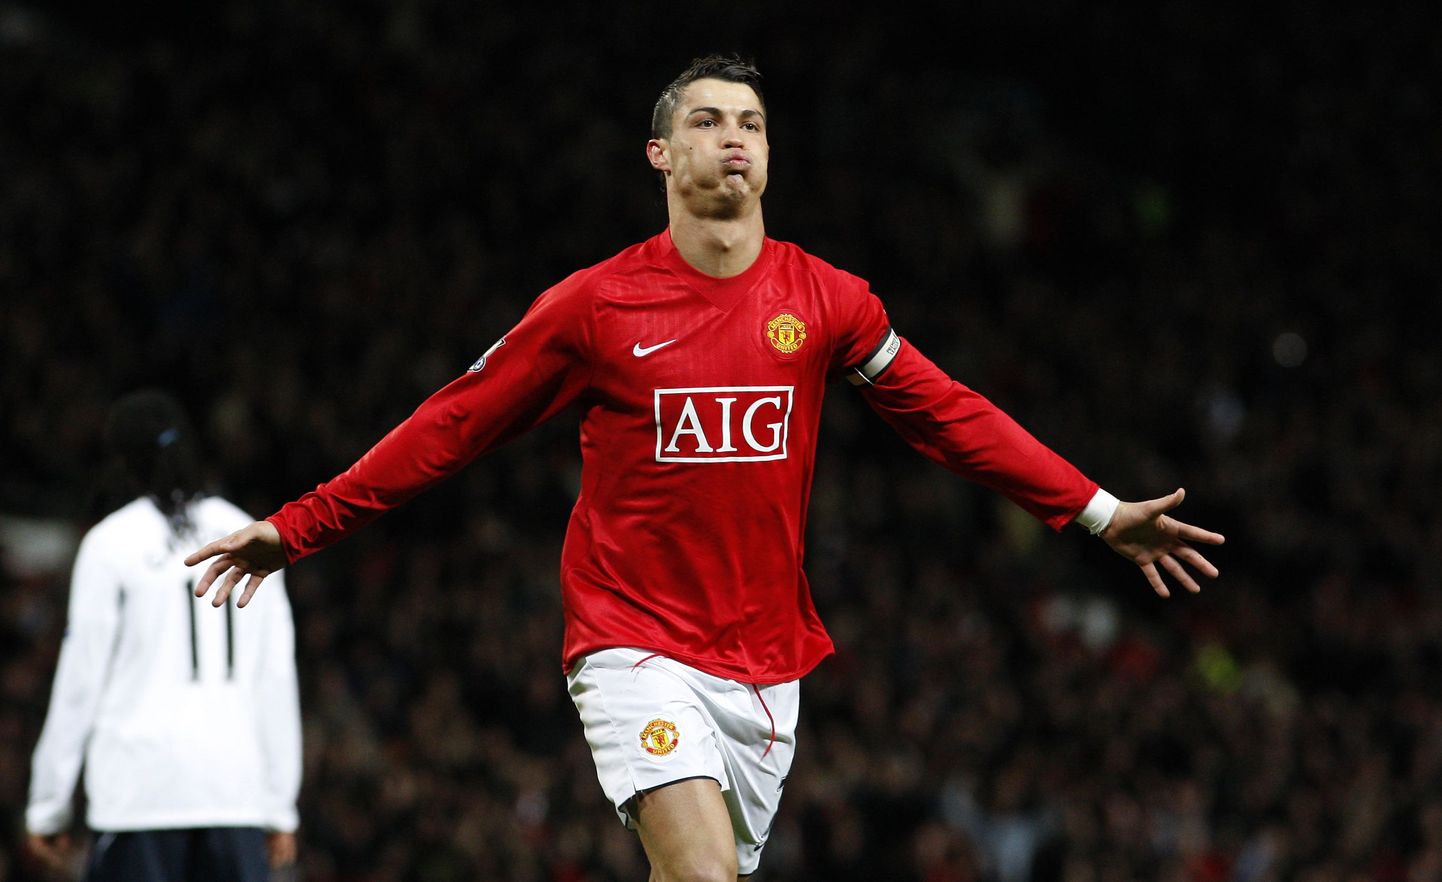 Kaks aastat tagasi toimunud Meistrite liiga finaalis mängis Cristiano Ronaldo veel Manchester Unitedi ridades.